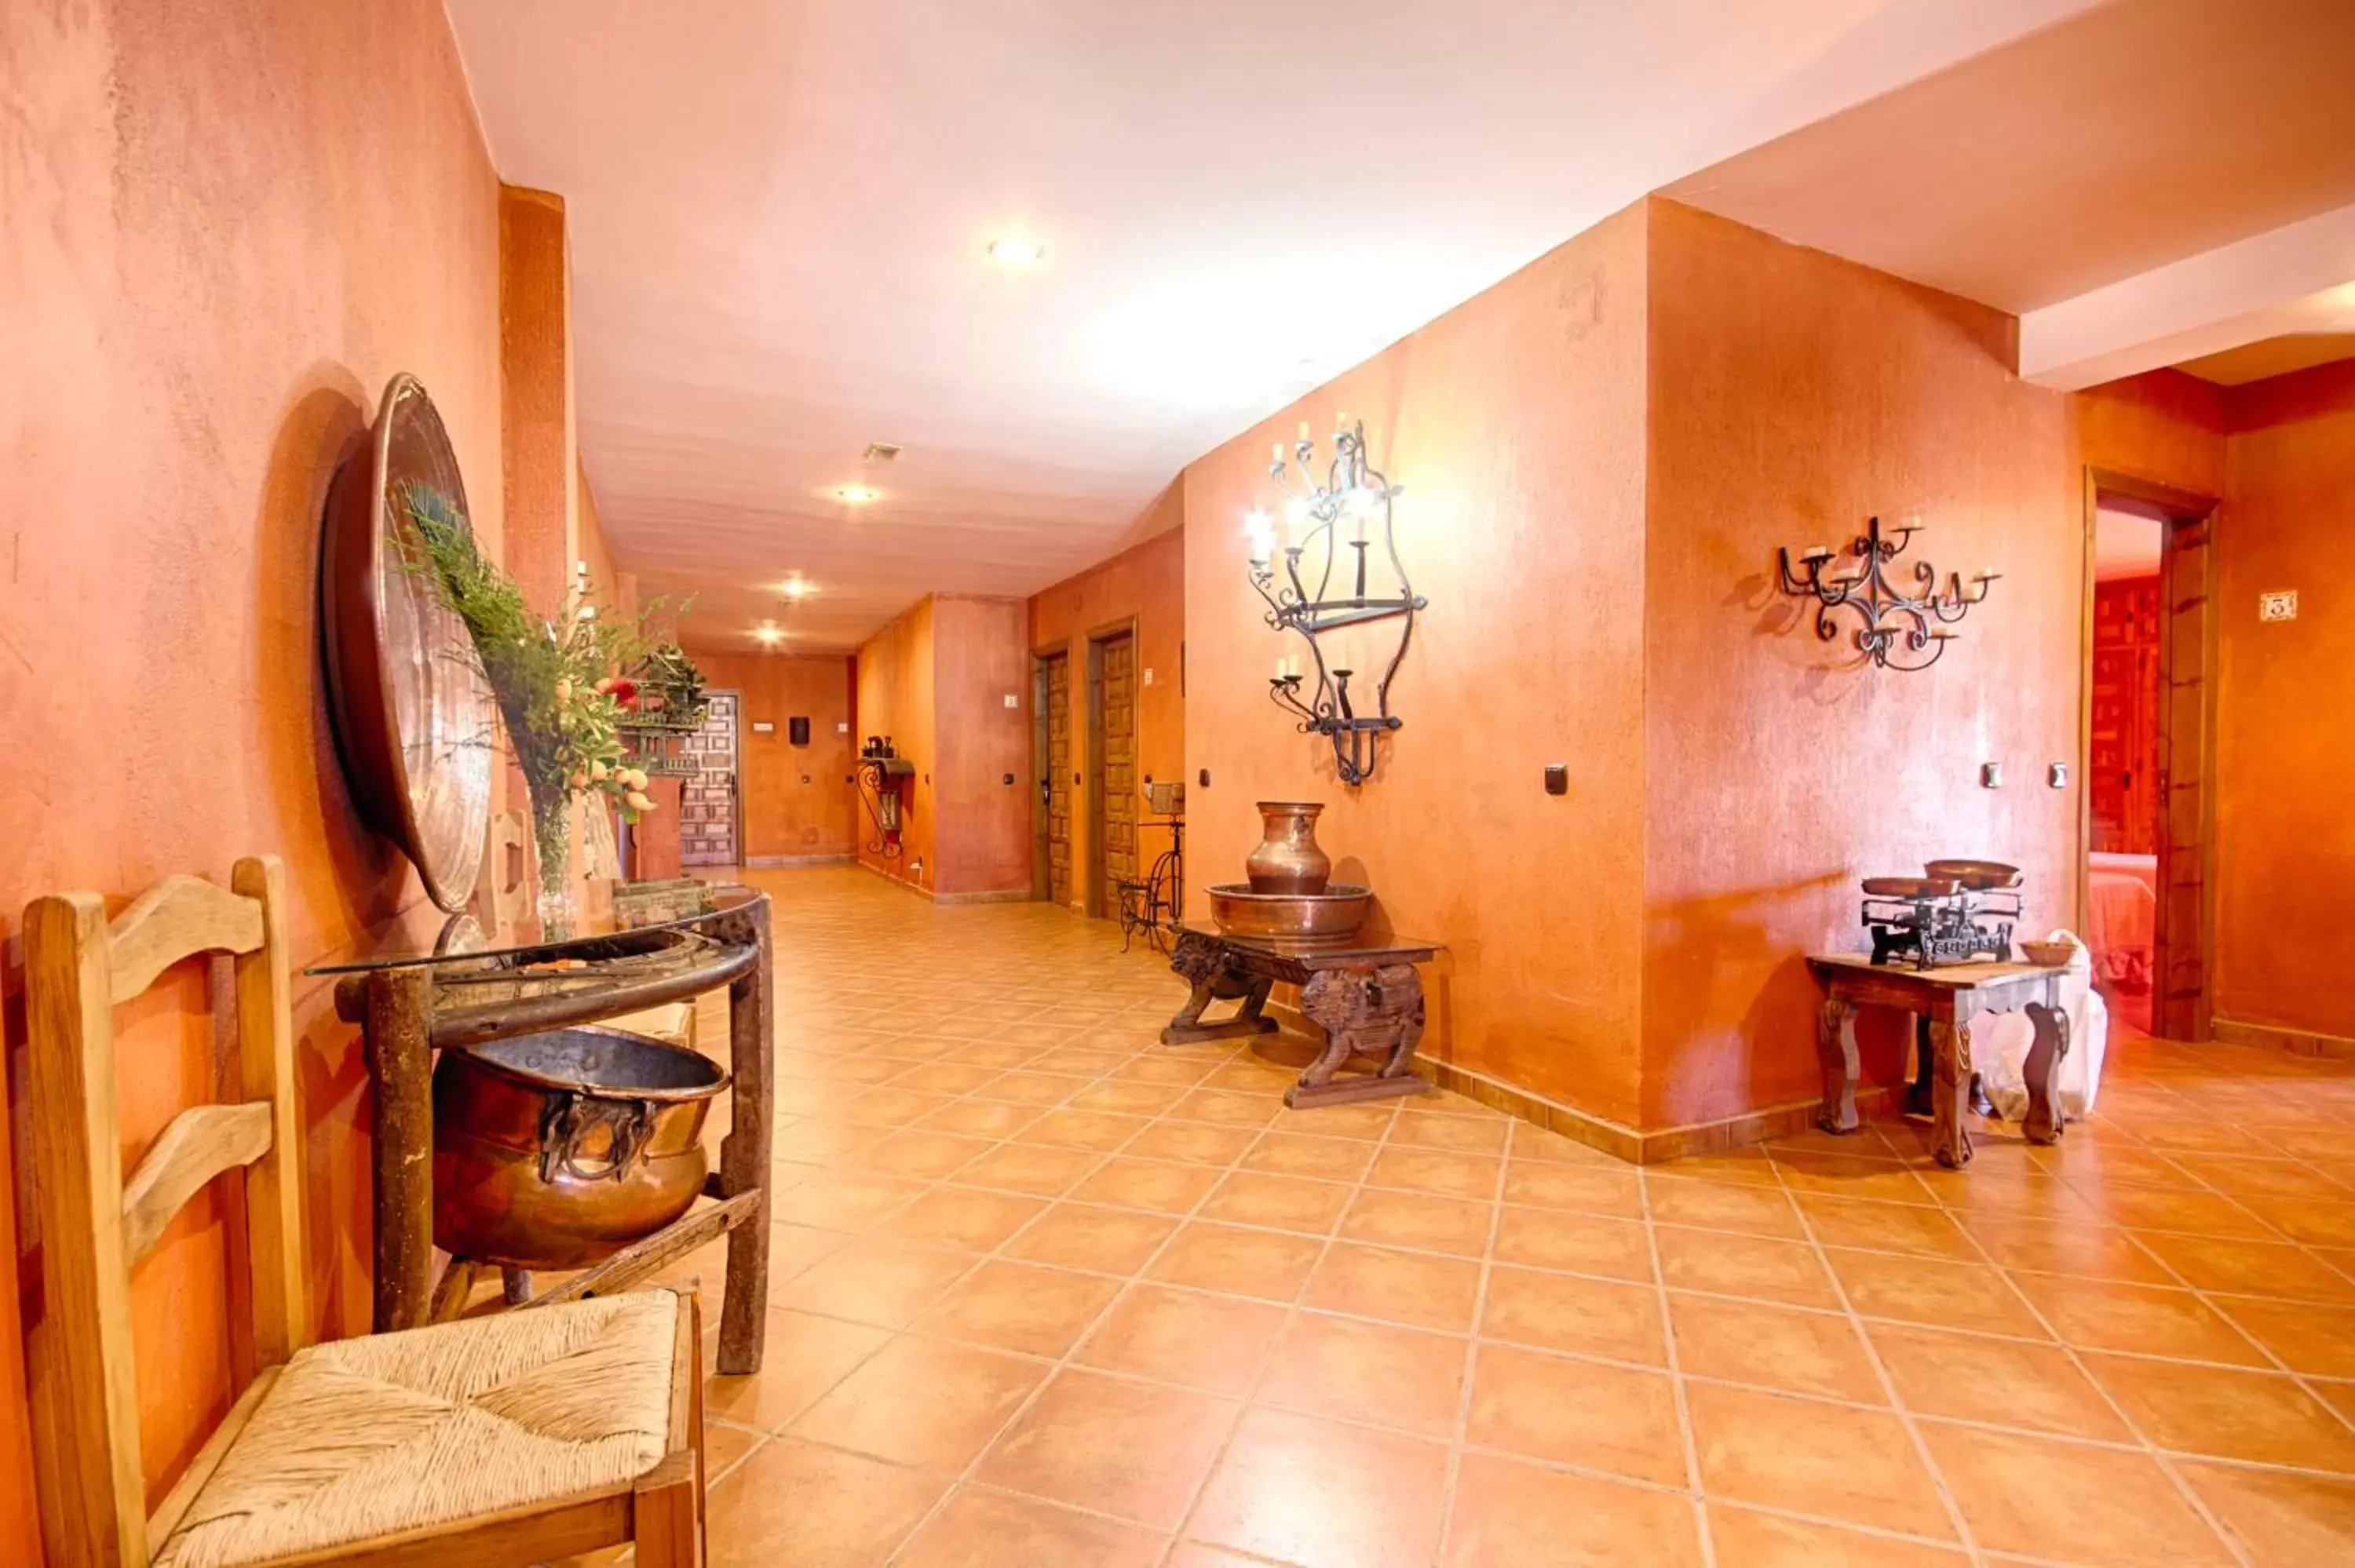 Lobby or reception, Lobby/Reception in Hotel Rural Sierra Tejeda